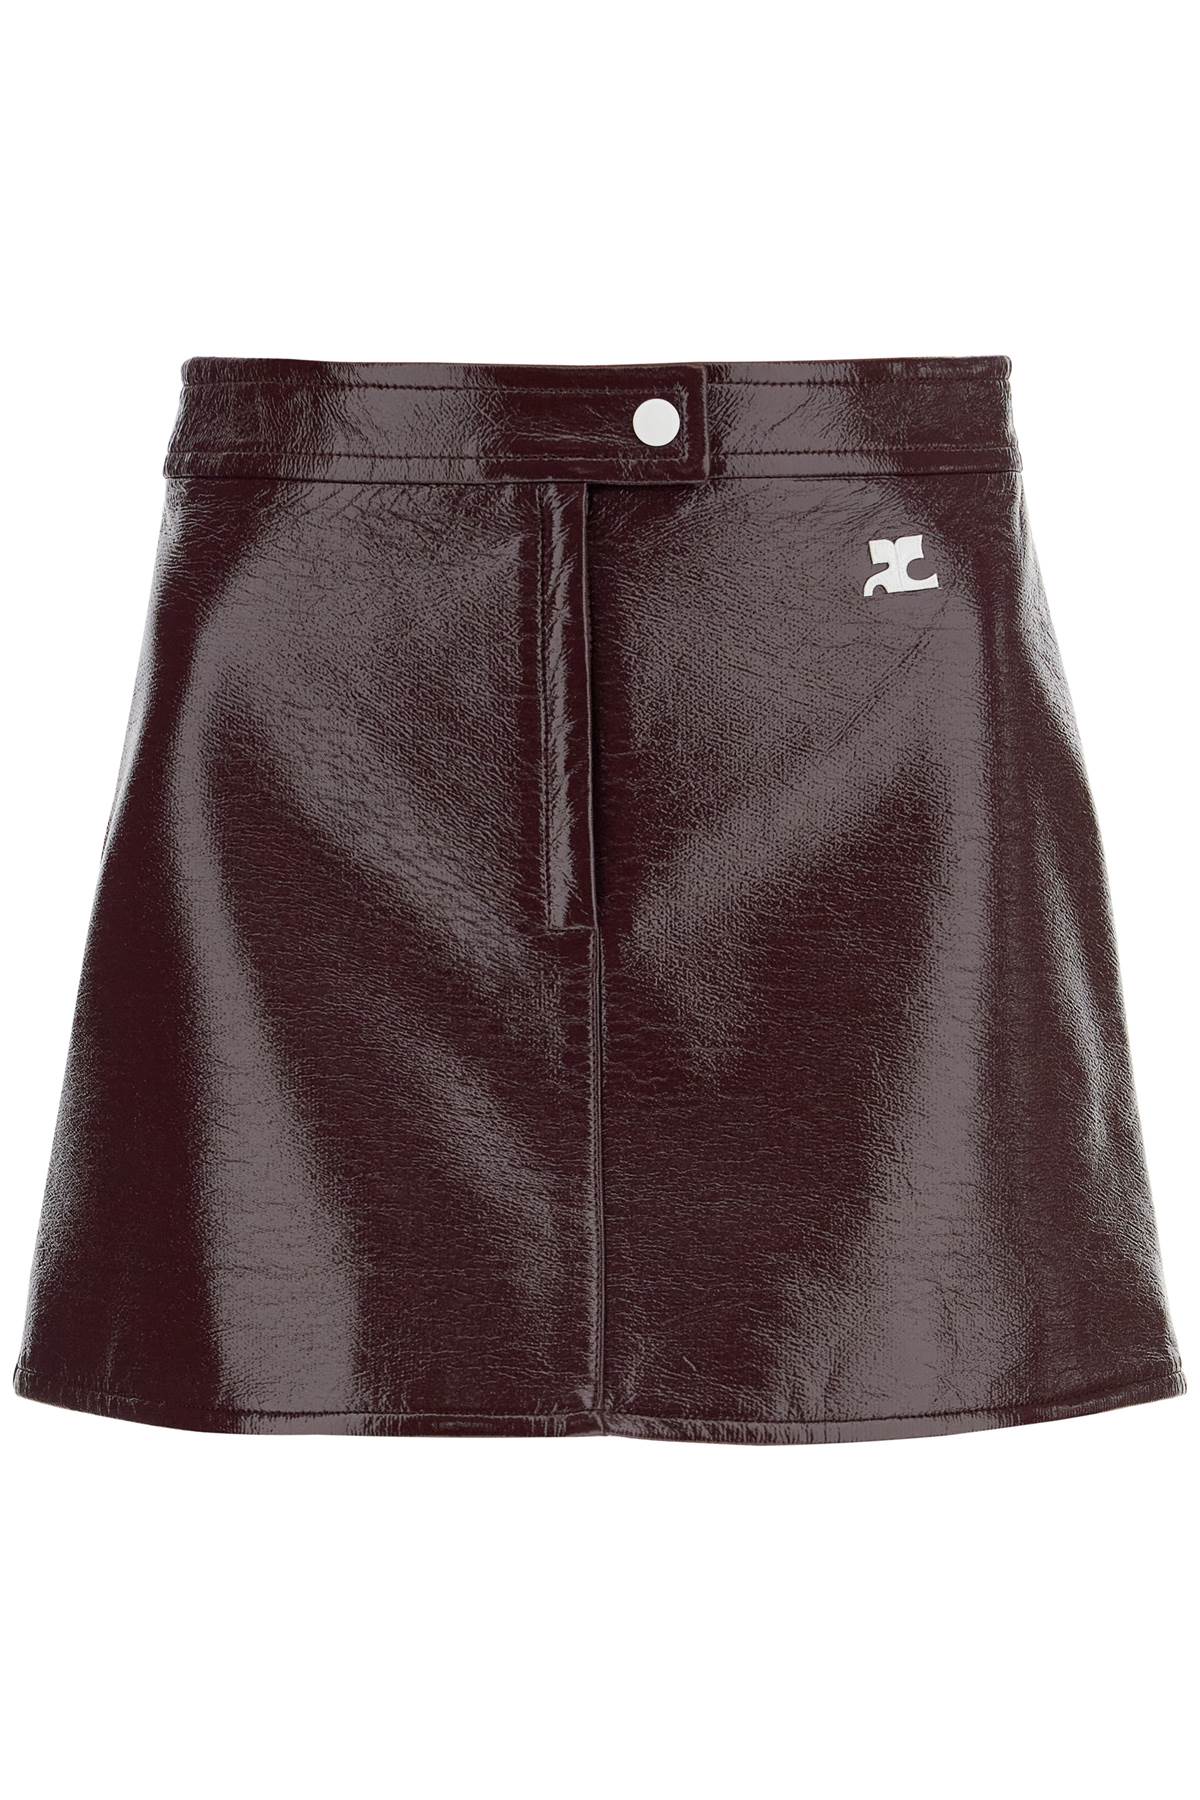 Courrèges COURREGES vinyl effect mini skirt